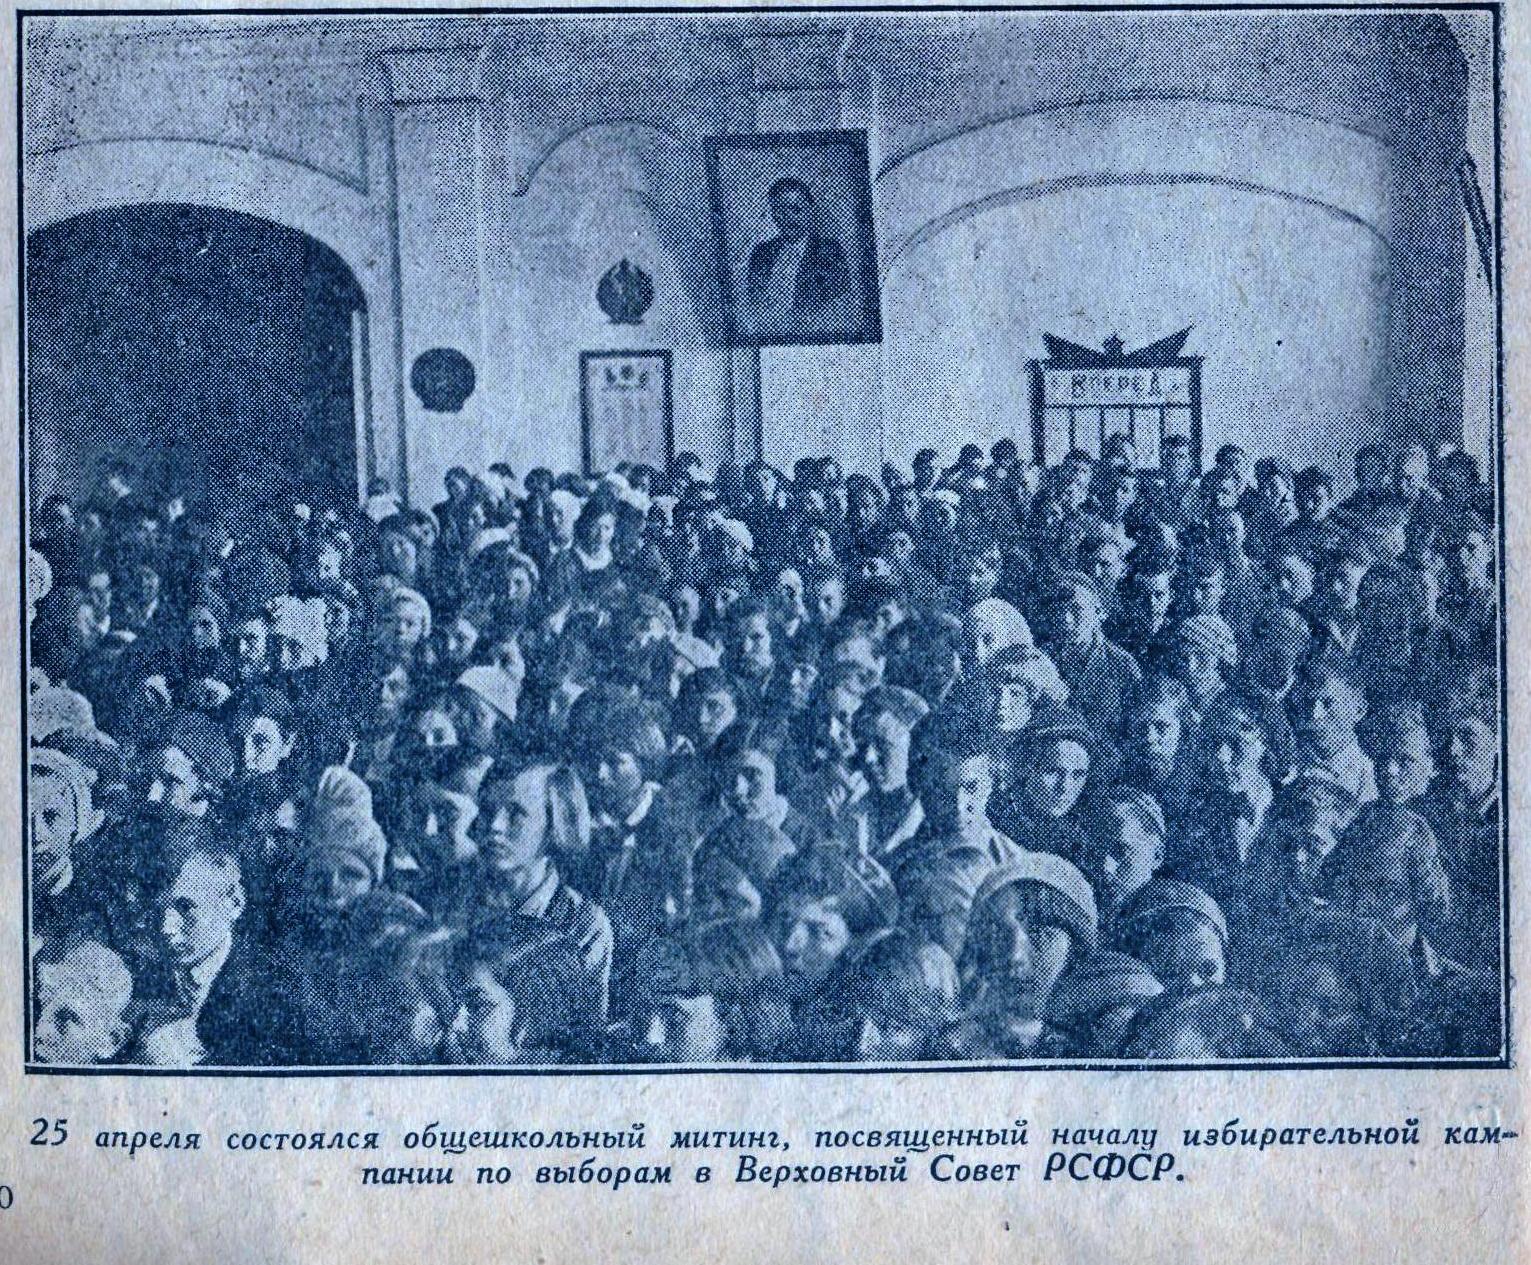 25 апреля состоялся общешкольный митинг,  посвящённый началу избирательной кампании по выборам в Верховный Совет РСФСР.